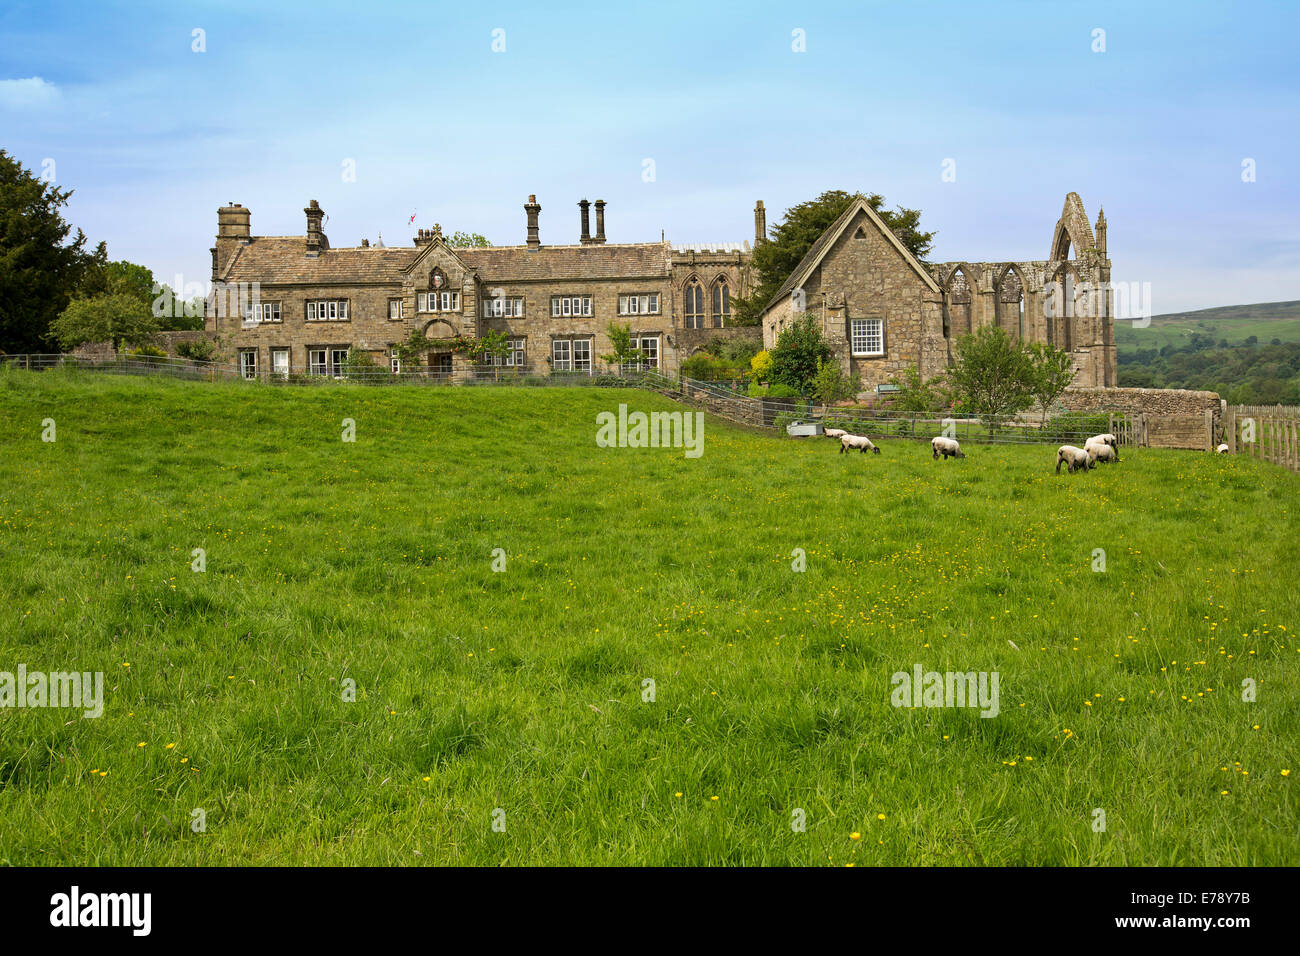 Enorme e imponente casa solariega inglesa, Bolton Abbey histórico rodeado por campos de hierba esmeralda con el pastoreo ovino Foto de stock